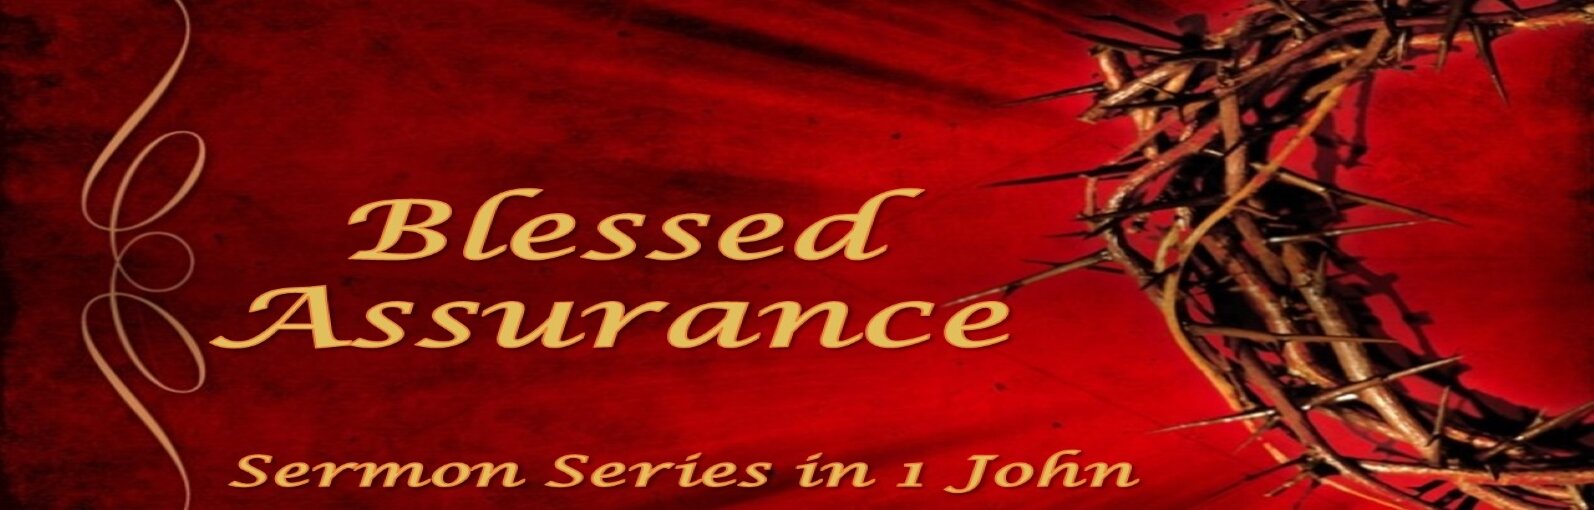 /images/r/blessed-assurance-sermon-series-art-1-john-banner/c1594x510/blessed-assurance-sermon-series-art-1-john-banner.jpg